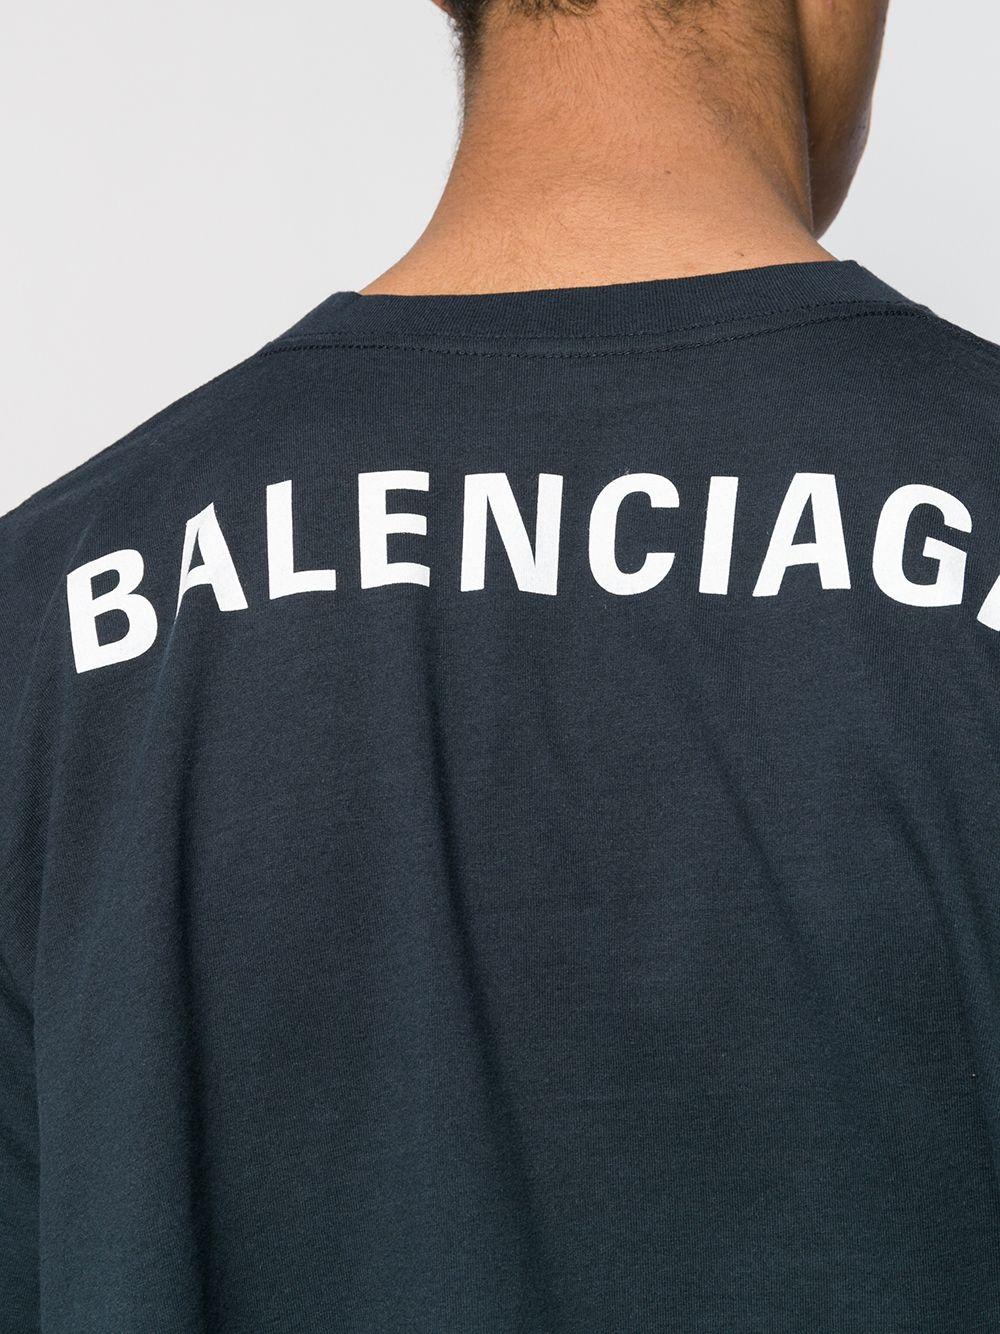 gennemsnit hvad som helst hver Balenciaga Rear Logo Print Oversize T-shirt in Blue for Men - Lyst